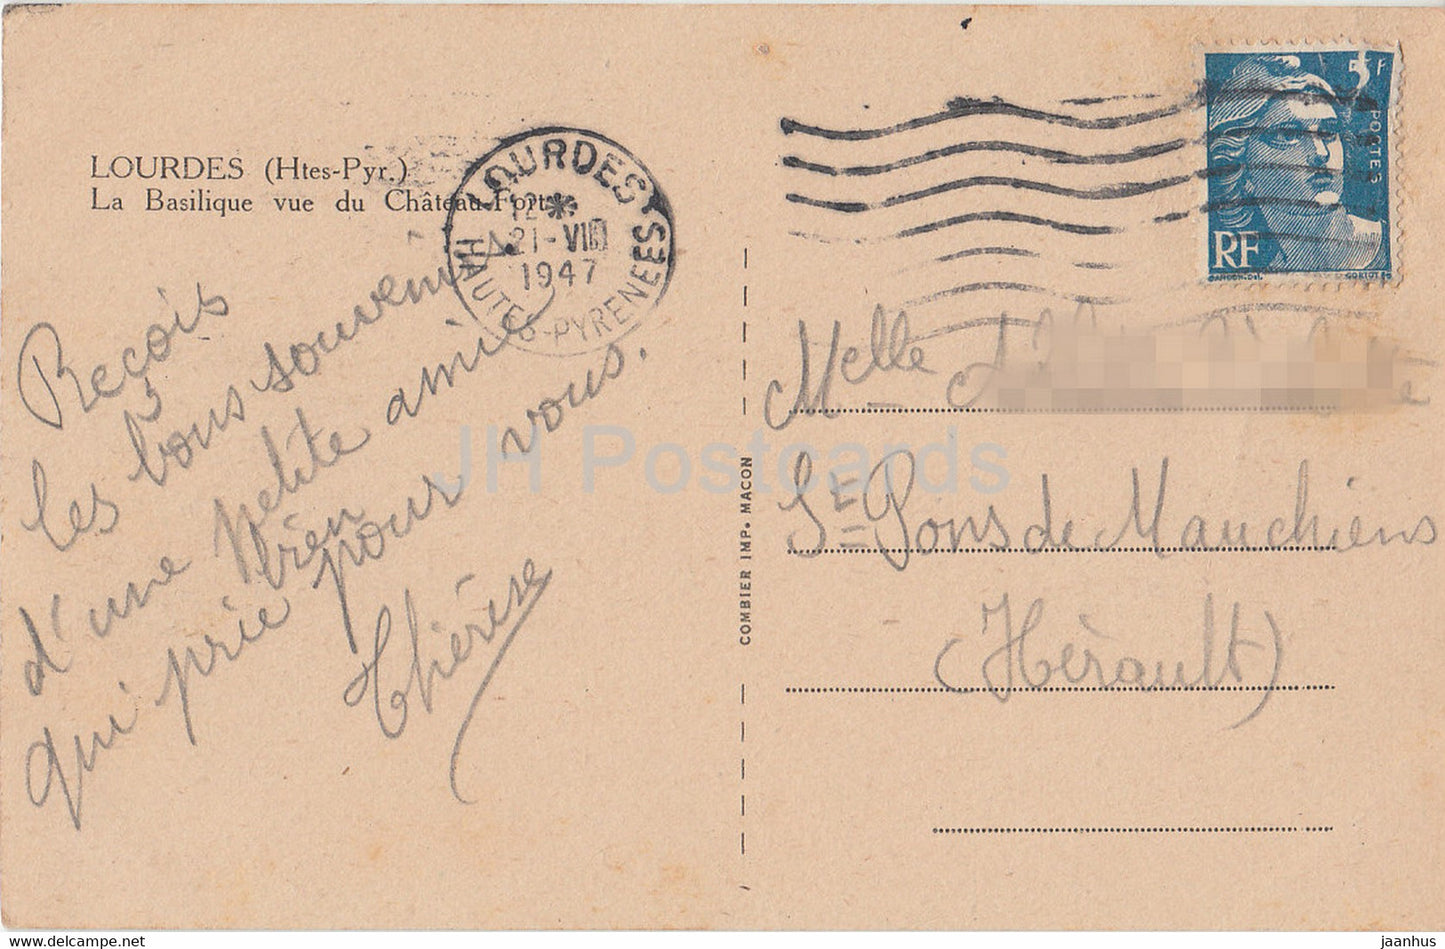 Lourdes - La Basilique Vue du Chateau Fort - cathedral - old postcard - 1947 - France - used